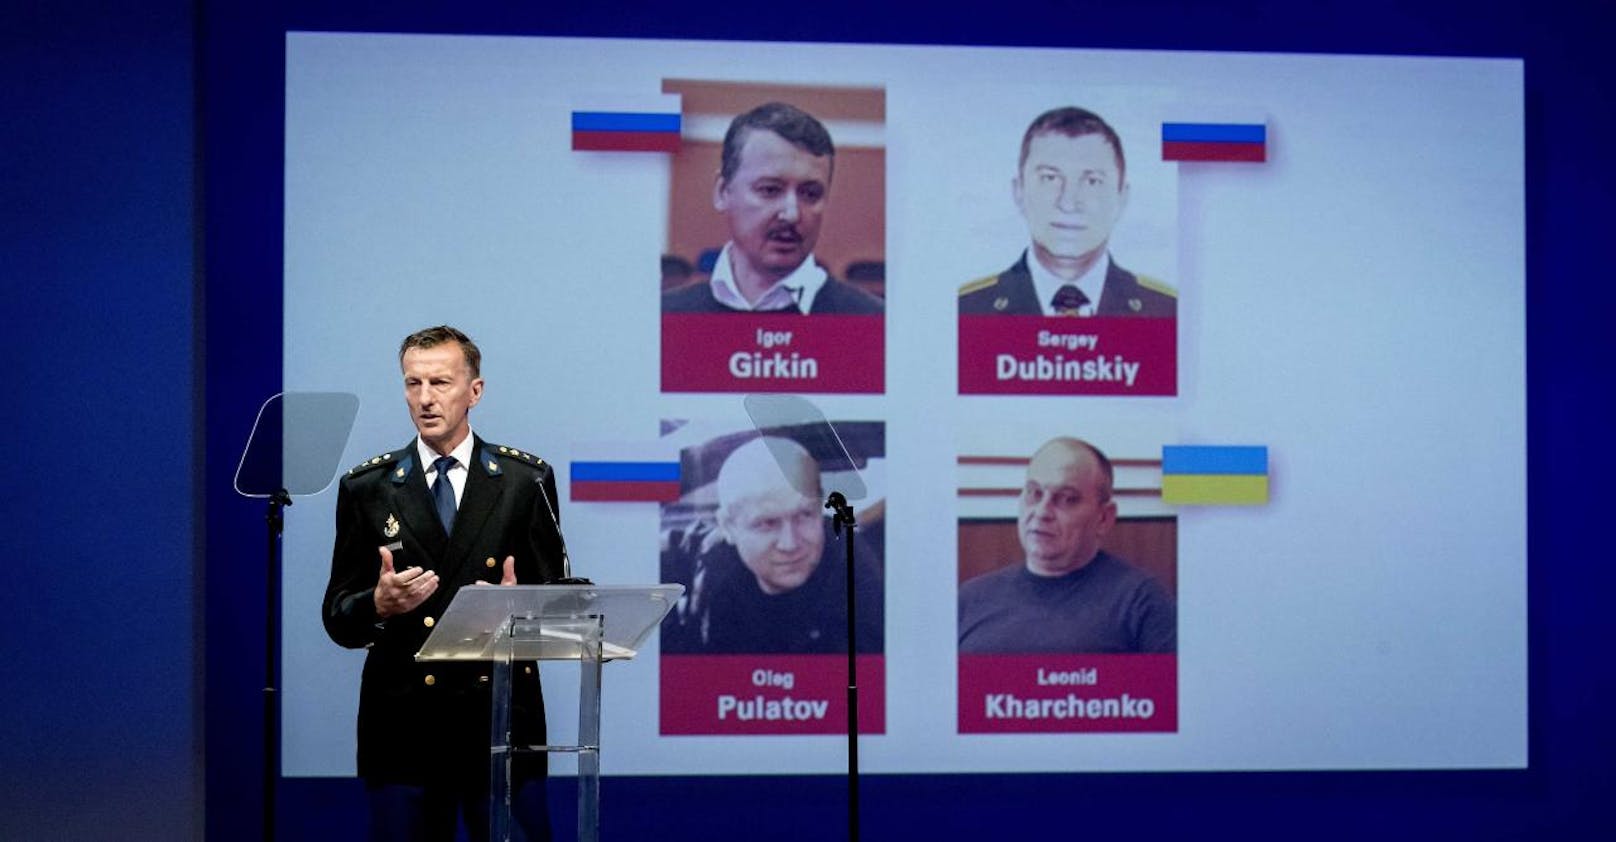 Am 14. November 2019 veröffentlichte das internationale Untersuchungsteam JIT Telefonmitschnitte, auf denen unter anderem Wladislaw Surkow, ein enger Berater des russische Präsidenten Wladimir Putin, zu hören sein soll.